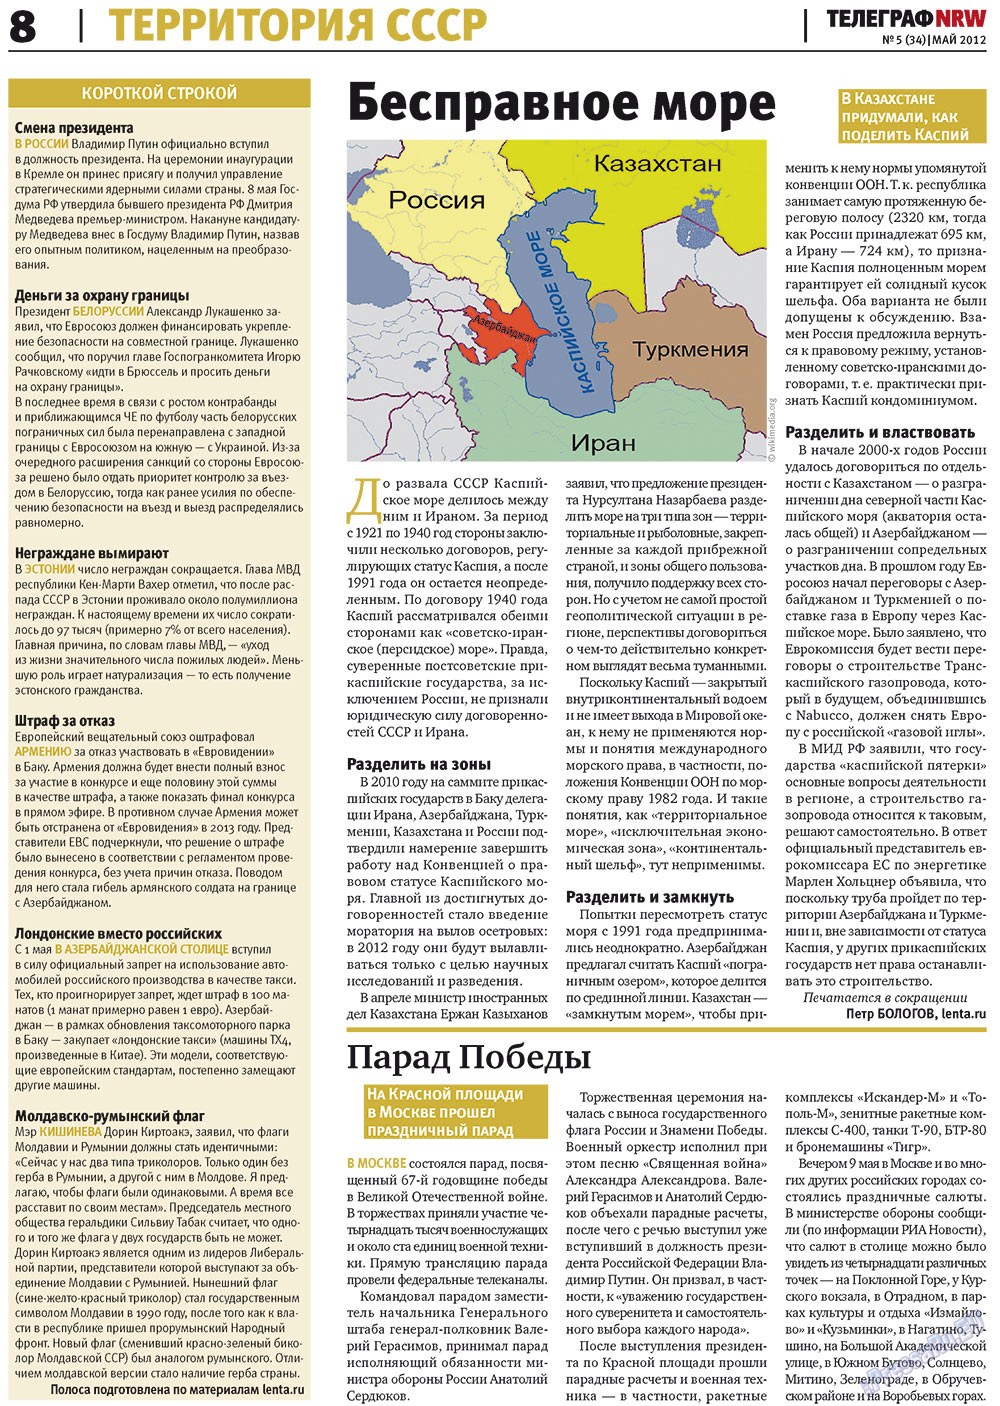 Телеграф NRW (газета). 2012 год, номер 5, стр. 8